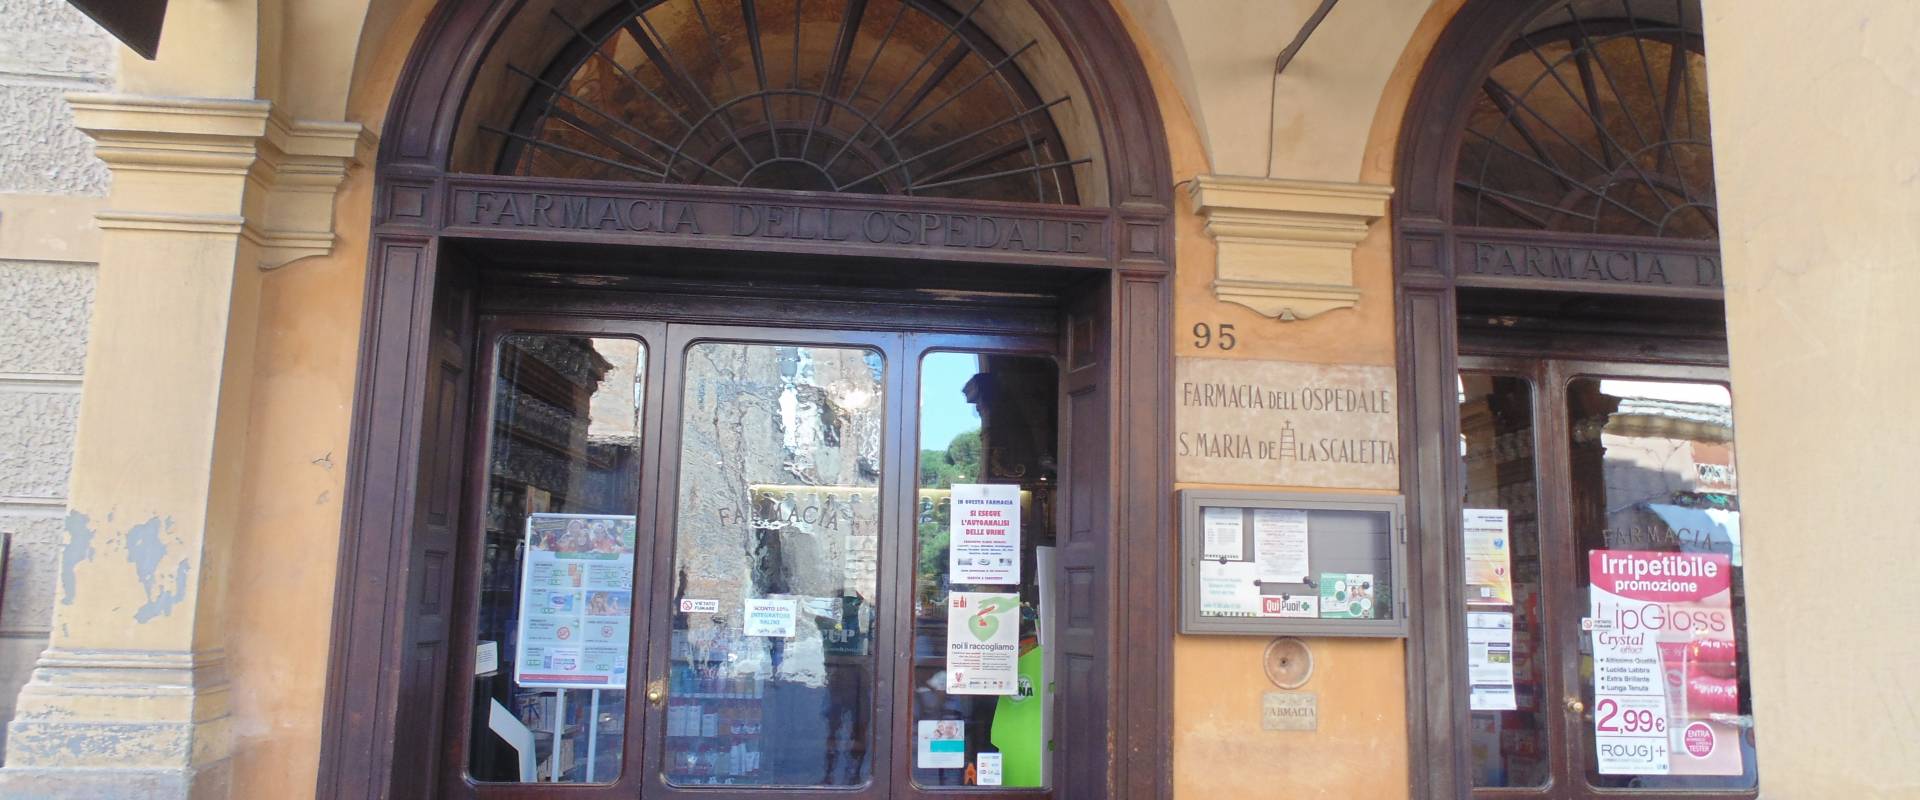 Farmacia dell'Ospedale della Scaletta (ingresso) photo by Maurolattuga